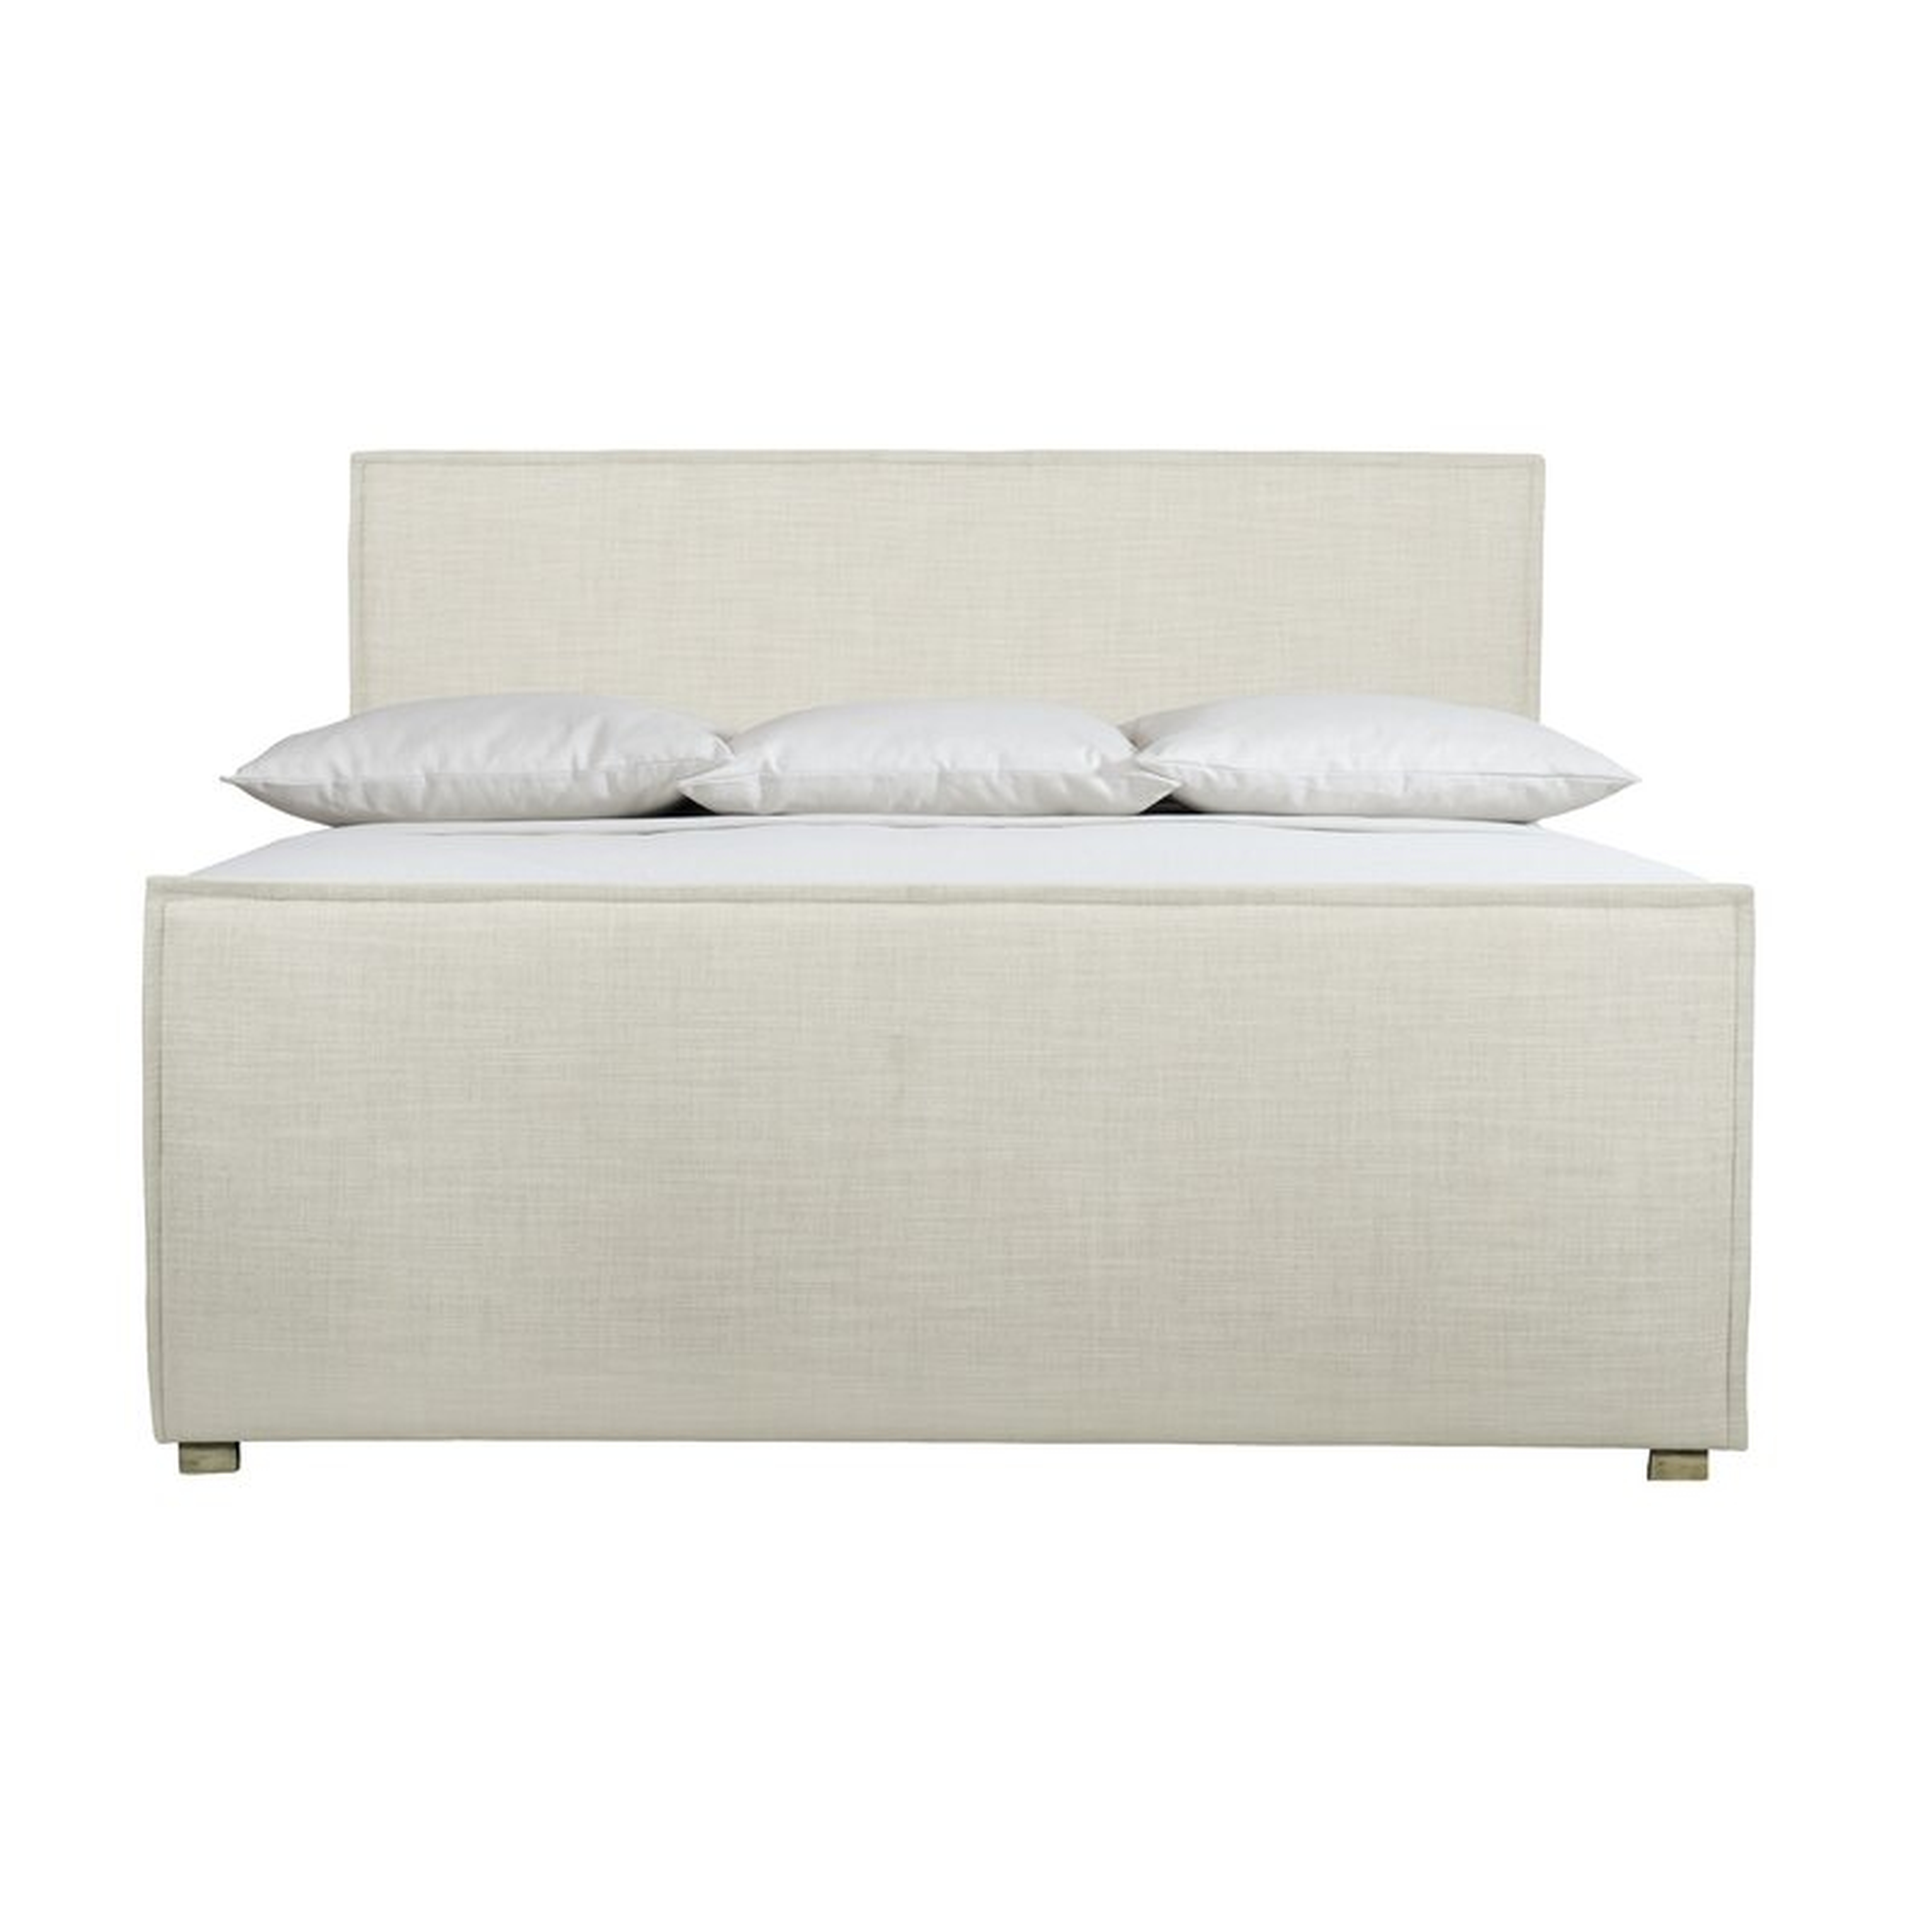 Bernhardt Highland Park Upholstered Low Profile Standard Bed Size: King - Perigold